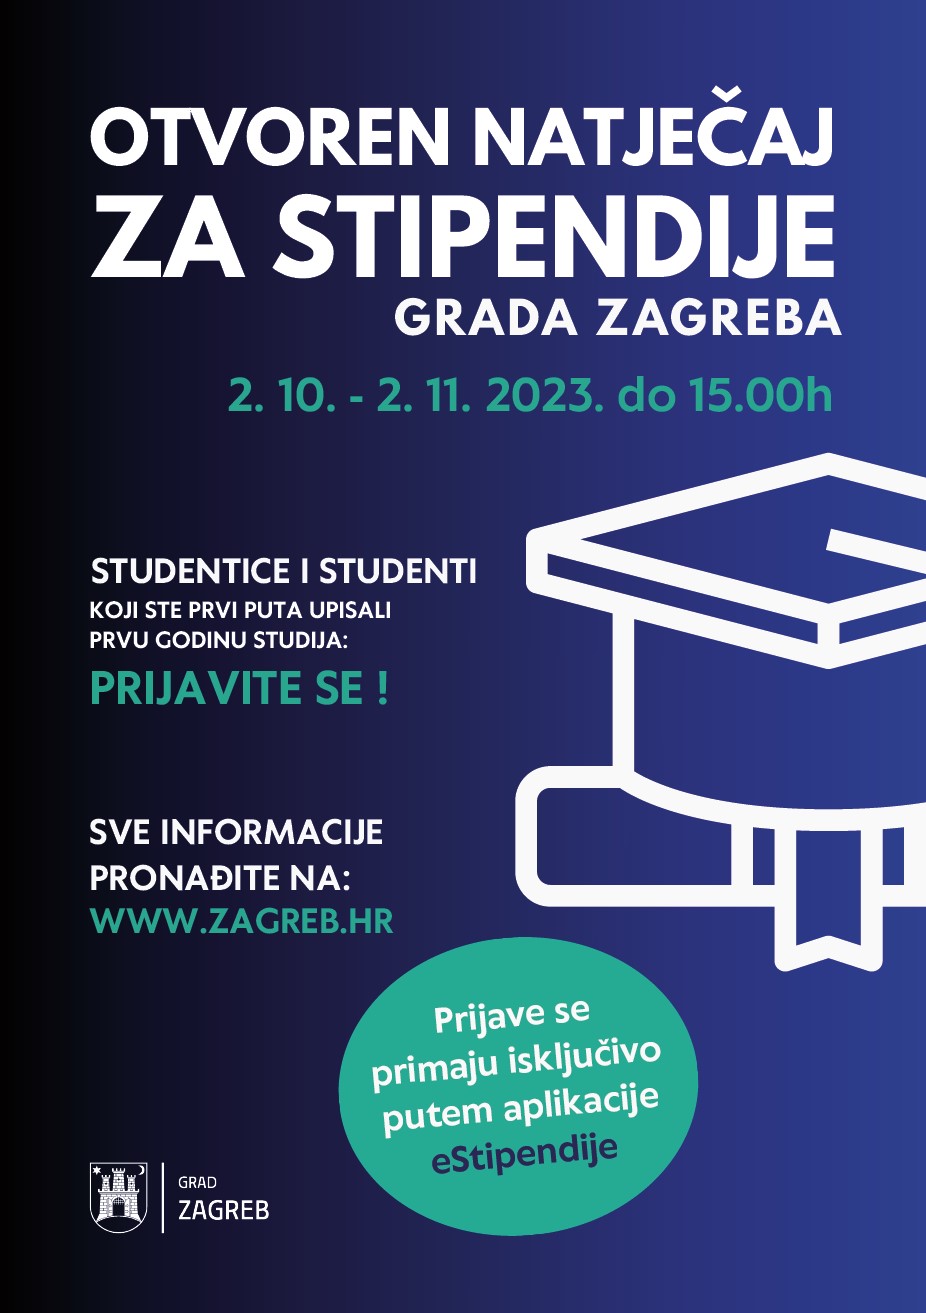 Objavljeni su Natječaji za dodjelu Stipendije Grada Zagreba studentima koji su prvi put upisali prvu godinu studija